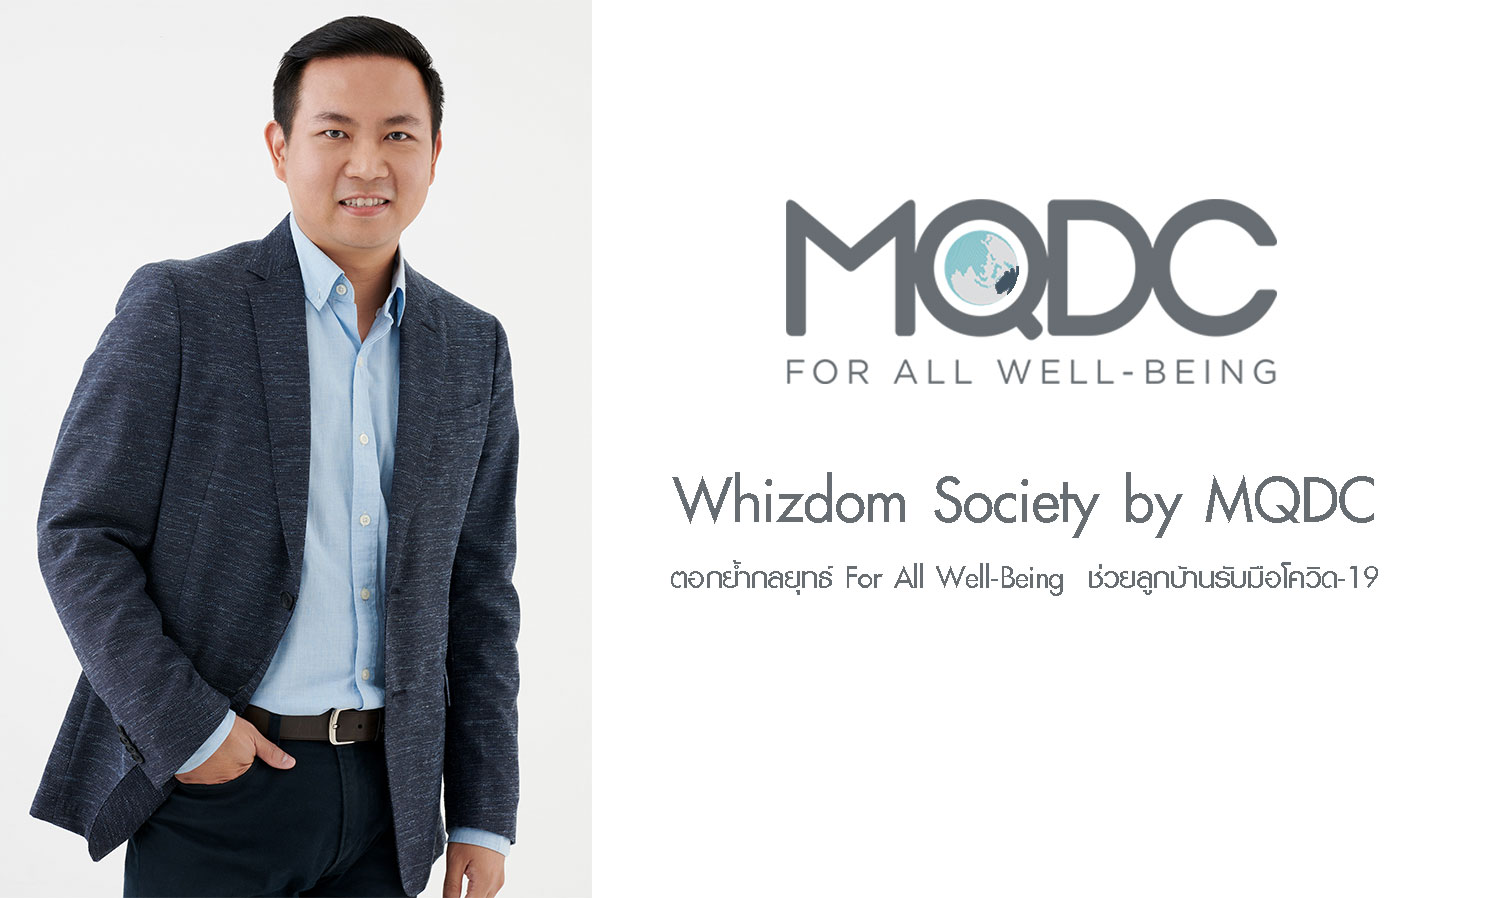 Whizdom Society by MQDC ตอกย้ำกลยุทธ์ For All Well-Being  ช่วยลูกบ้านรับมือโควิด-19